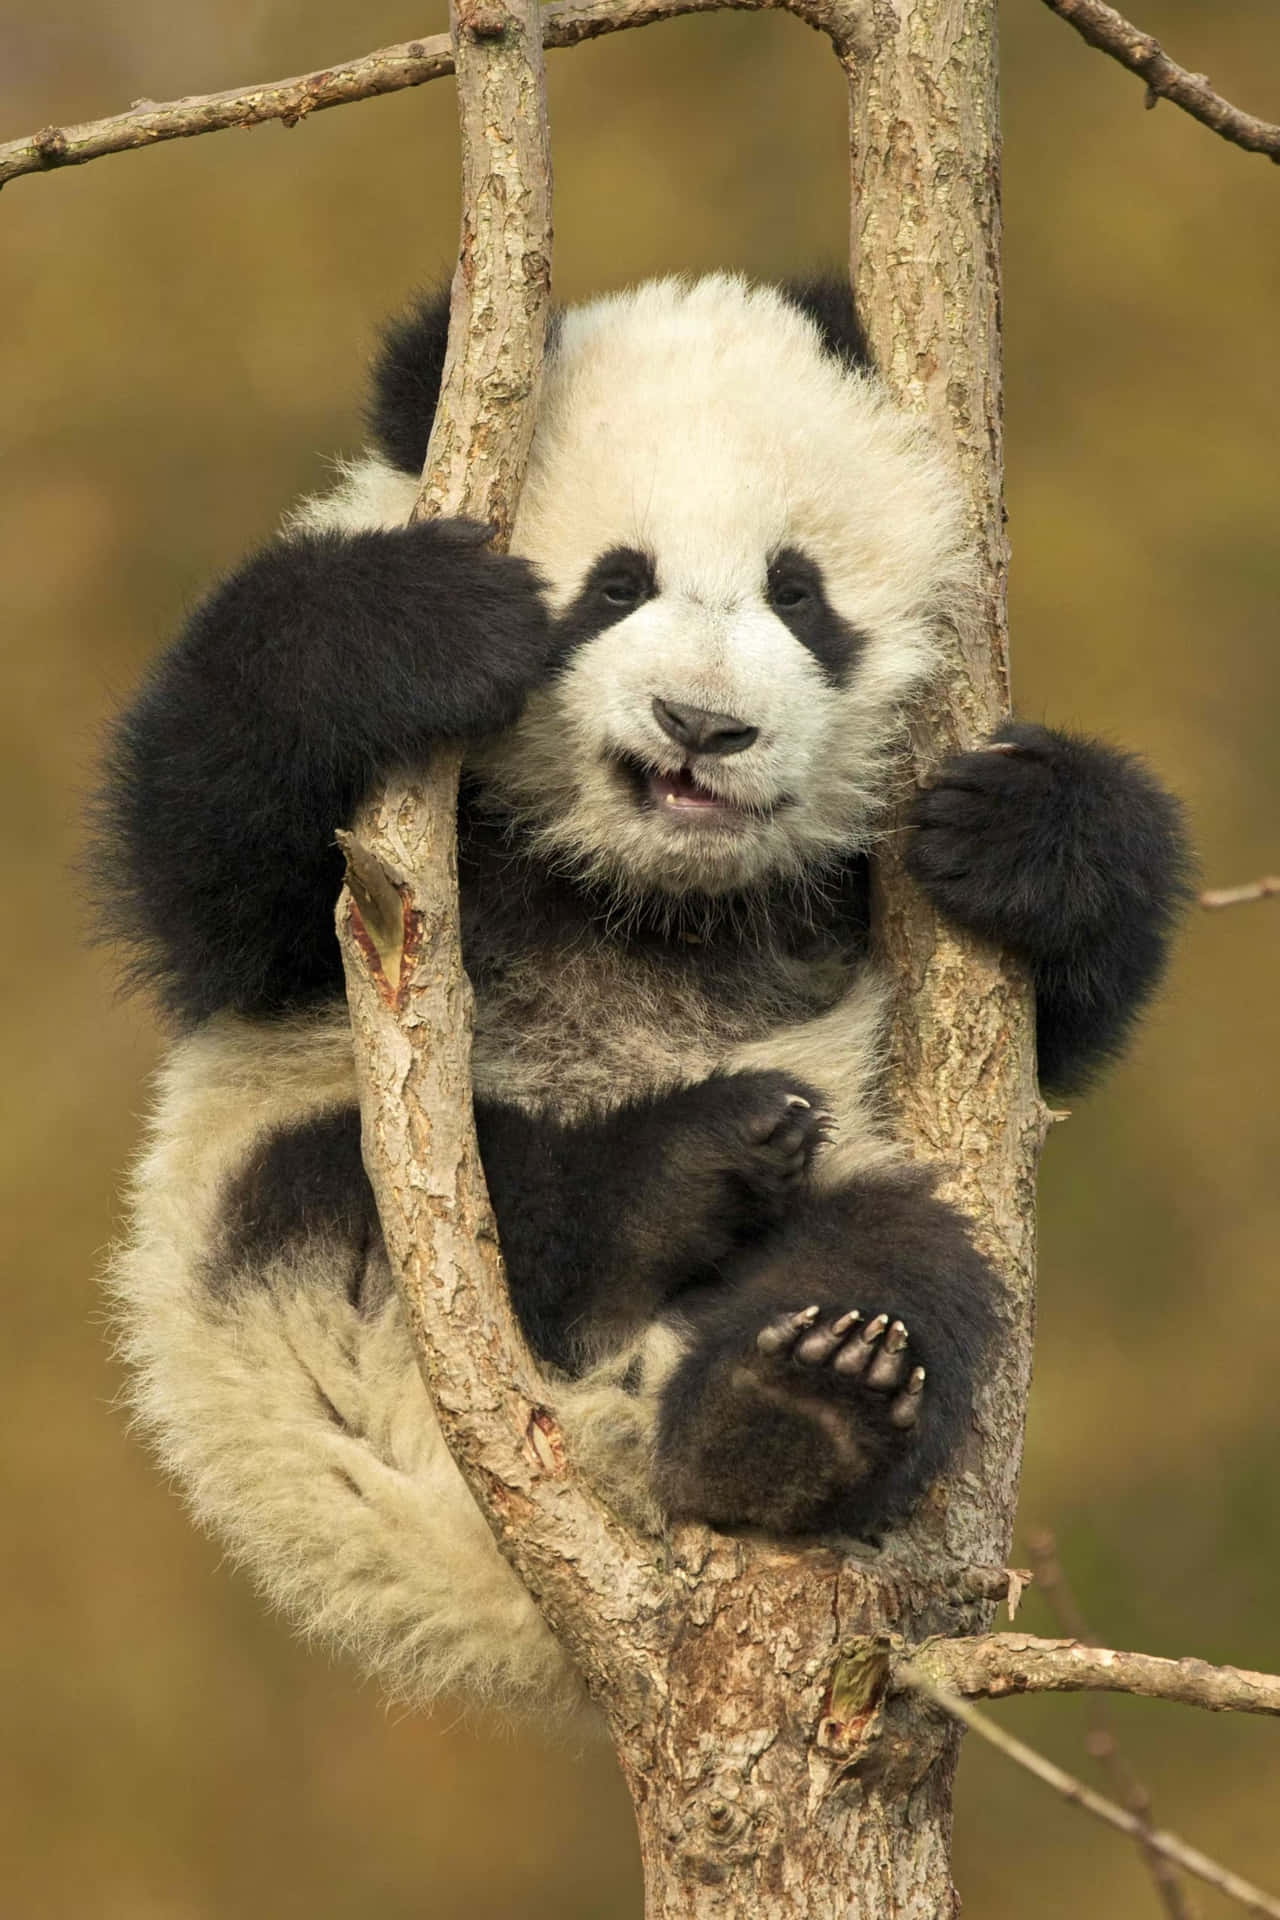 Guardail Mondo Attraverso Gli Occhi Di Un Adorabile Panda!